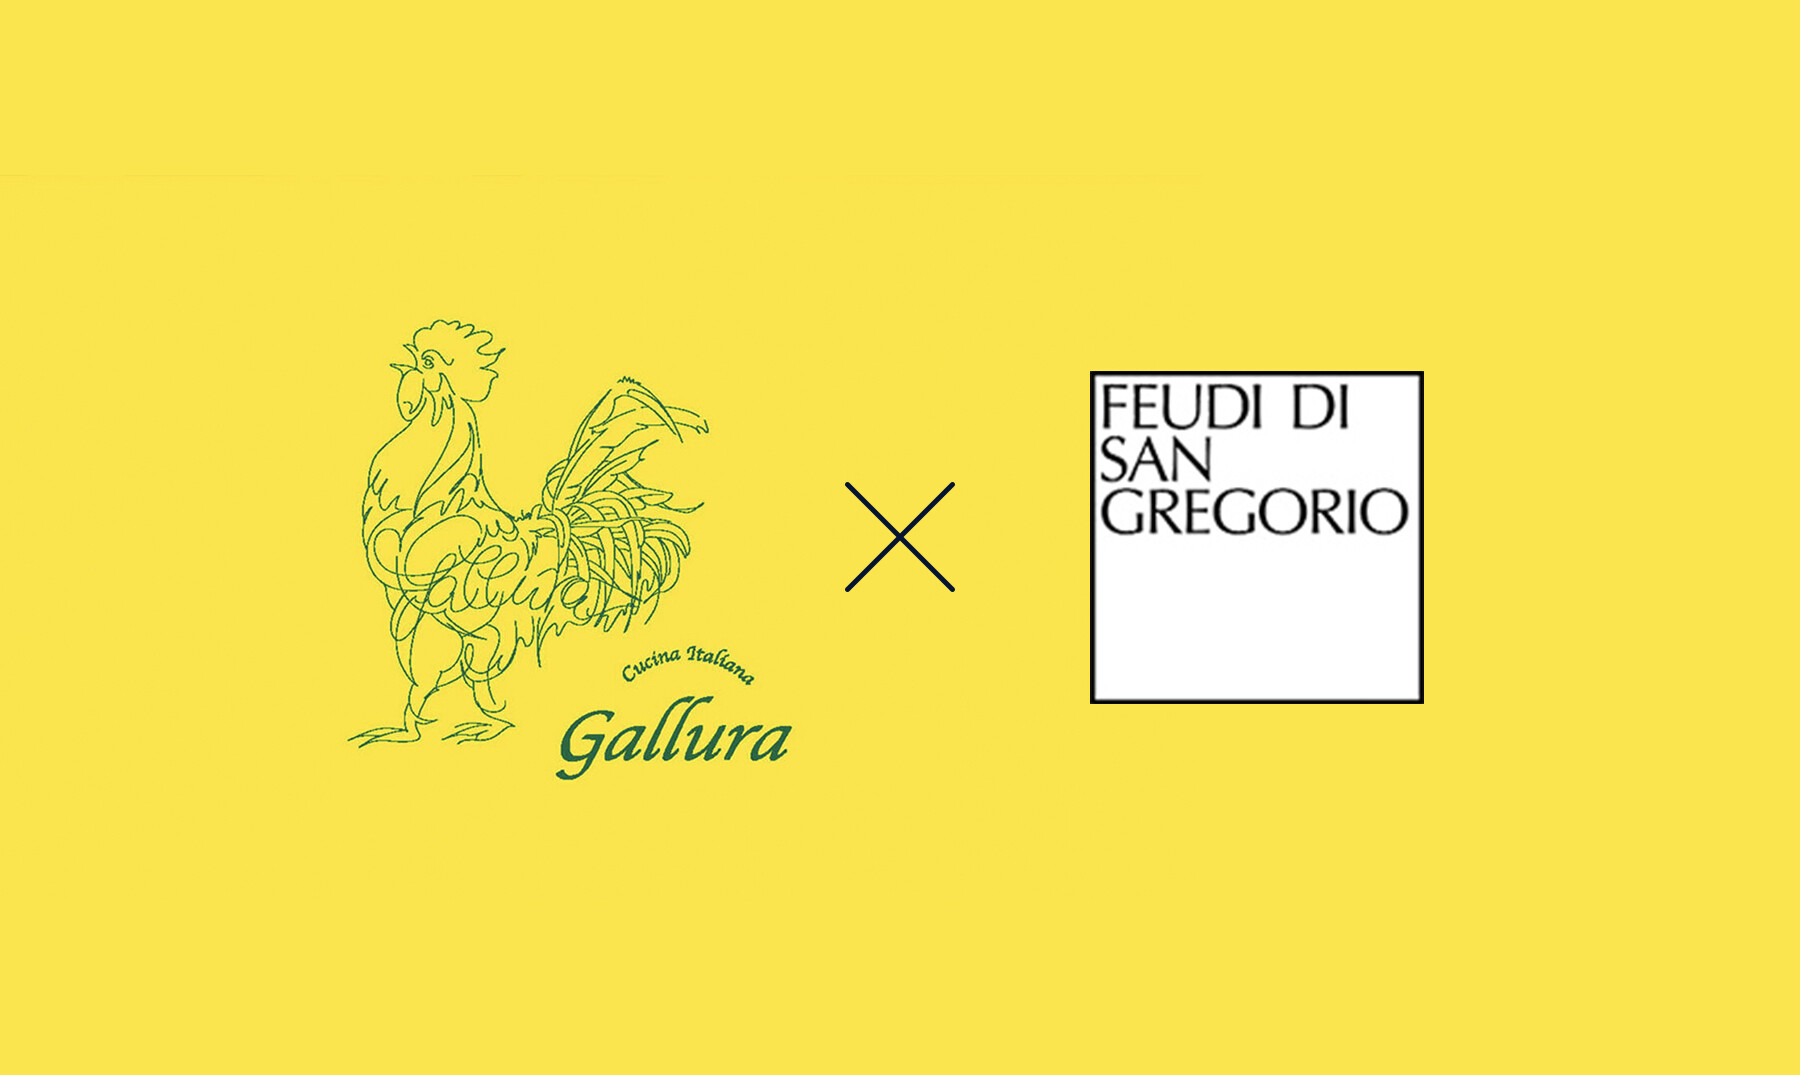 【Acceptance of applications closed】Cucina Italiana Gallura × Feudi di San Gregorio's image